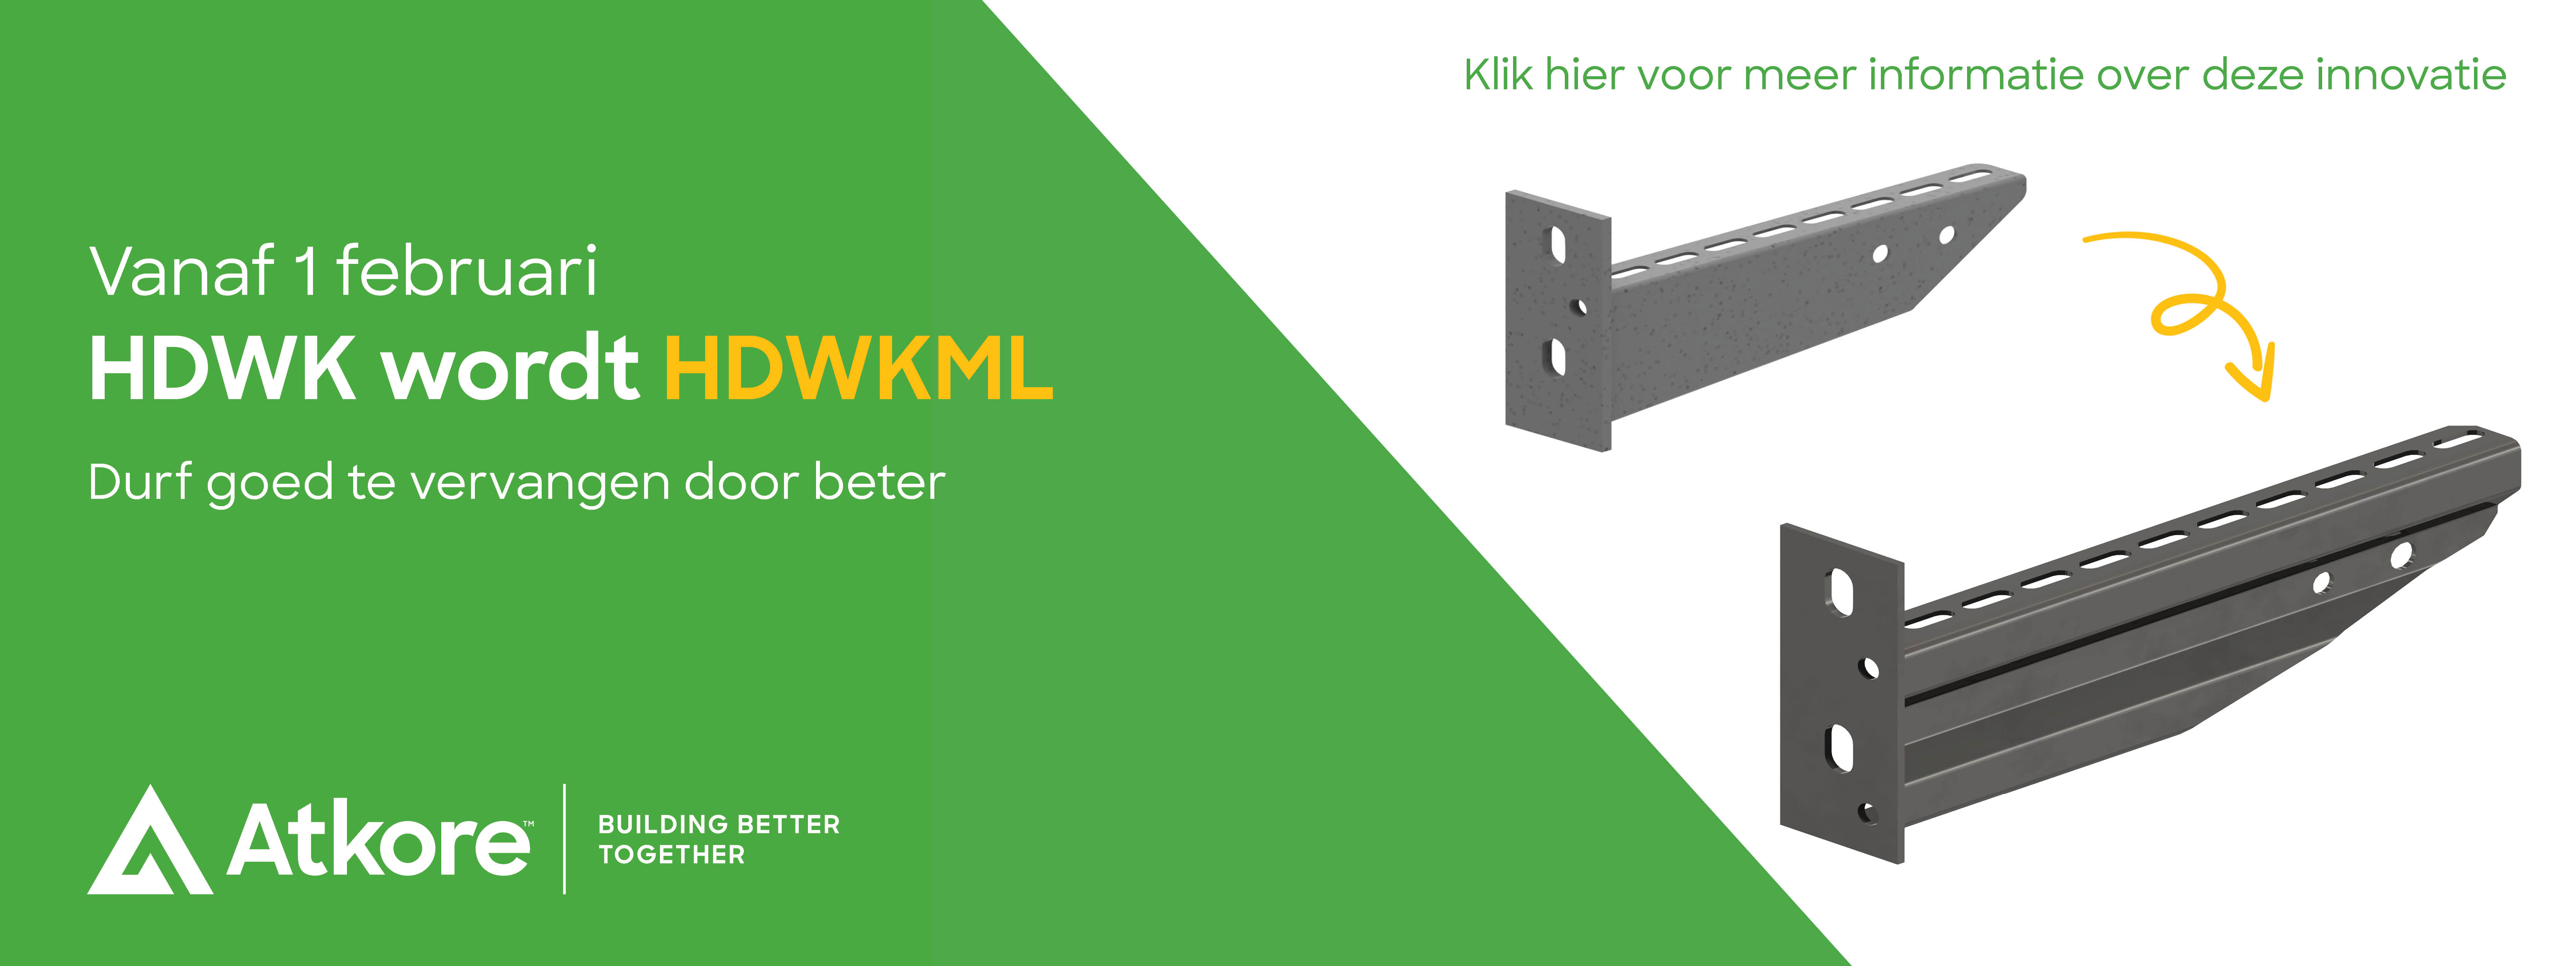 HDWKML_1600X600 website banner_NL